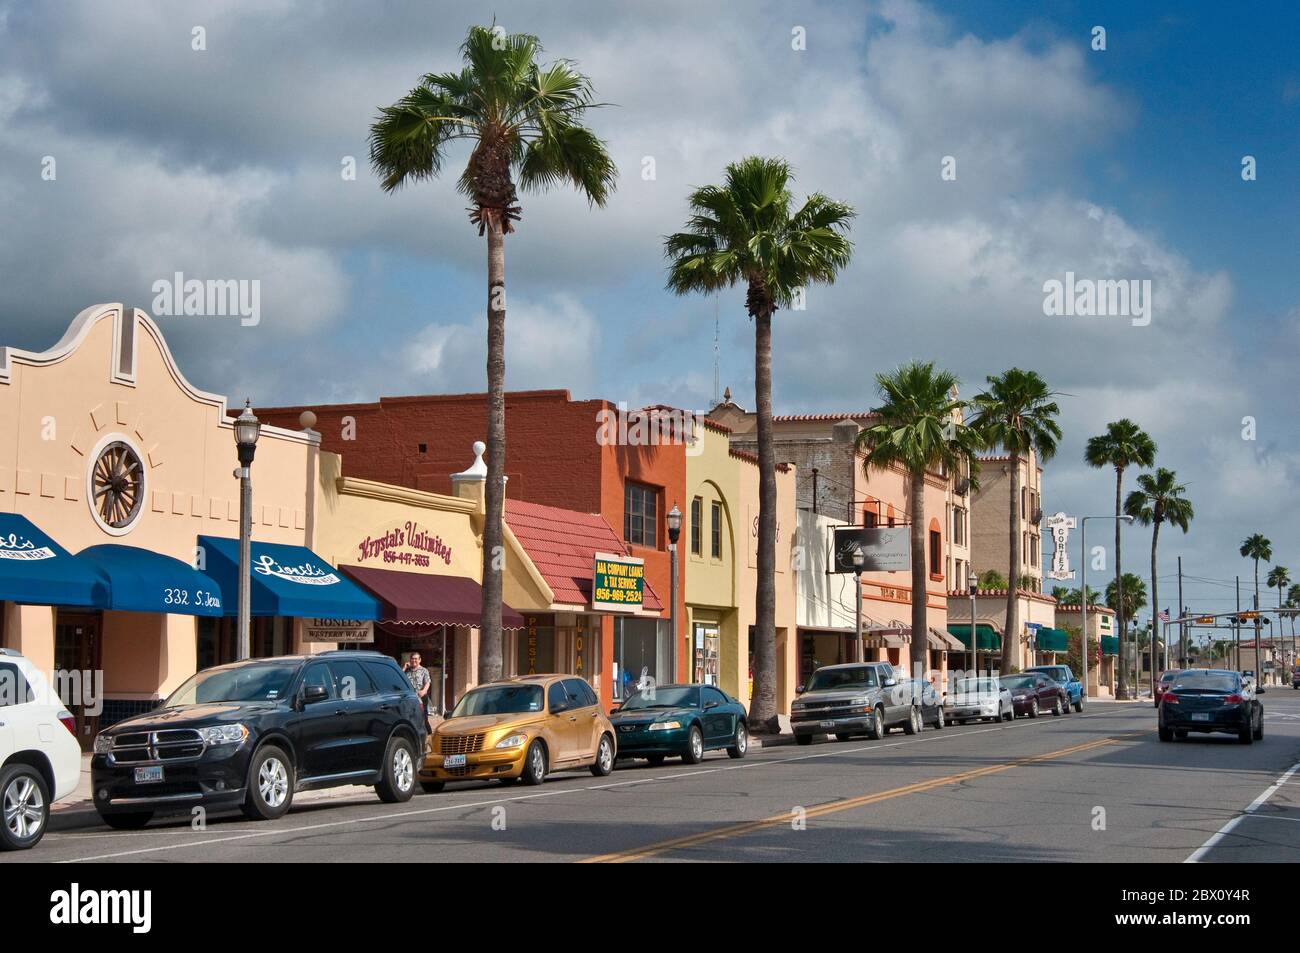 South Texas Avenue in Weslaco, Rio Grande Valley, Texas, USA Stock Photo